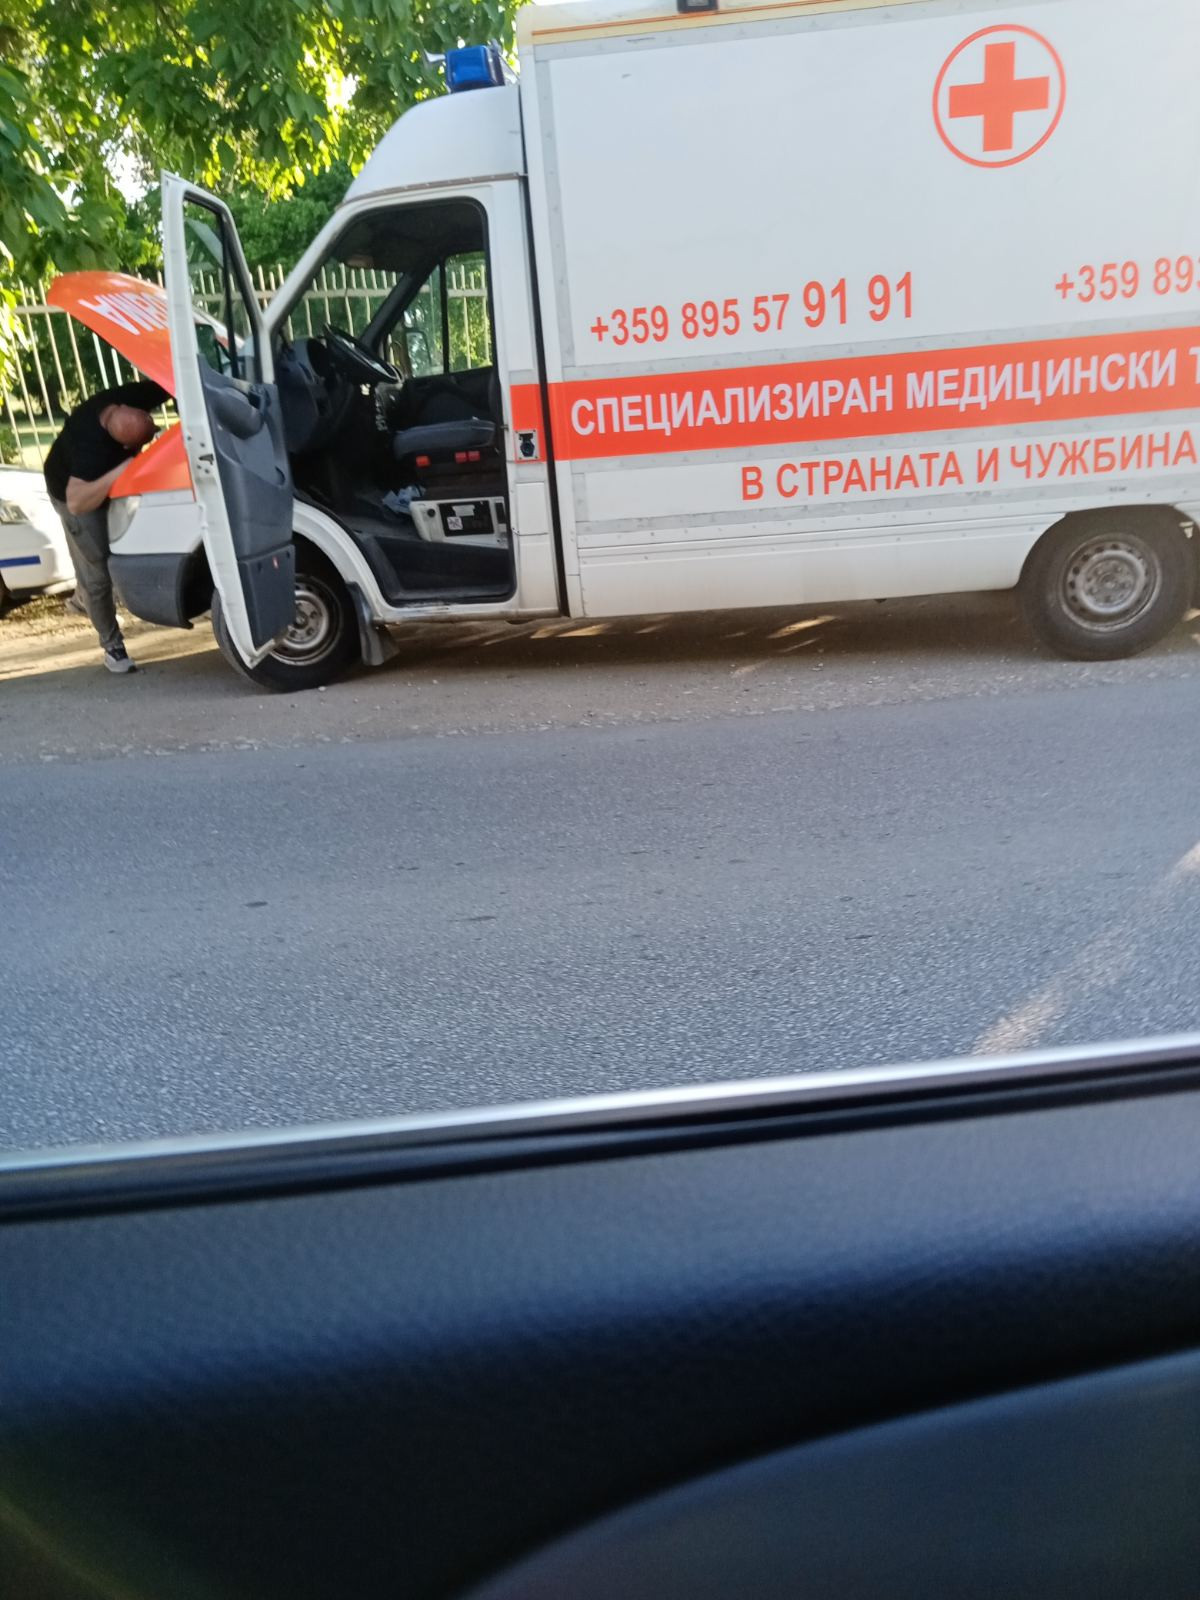 Хисарските полицаи засякоха частна линейка с фалшиви номера край Калояново